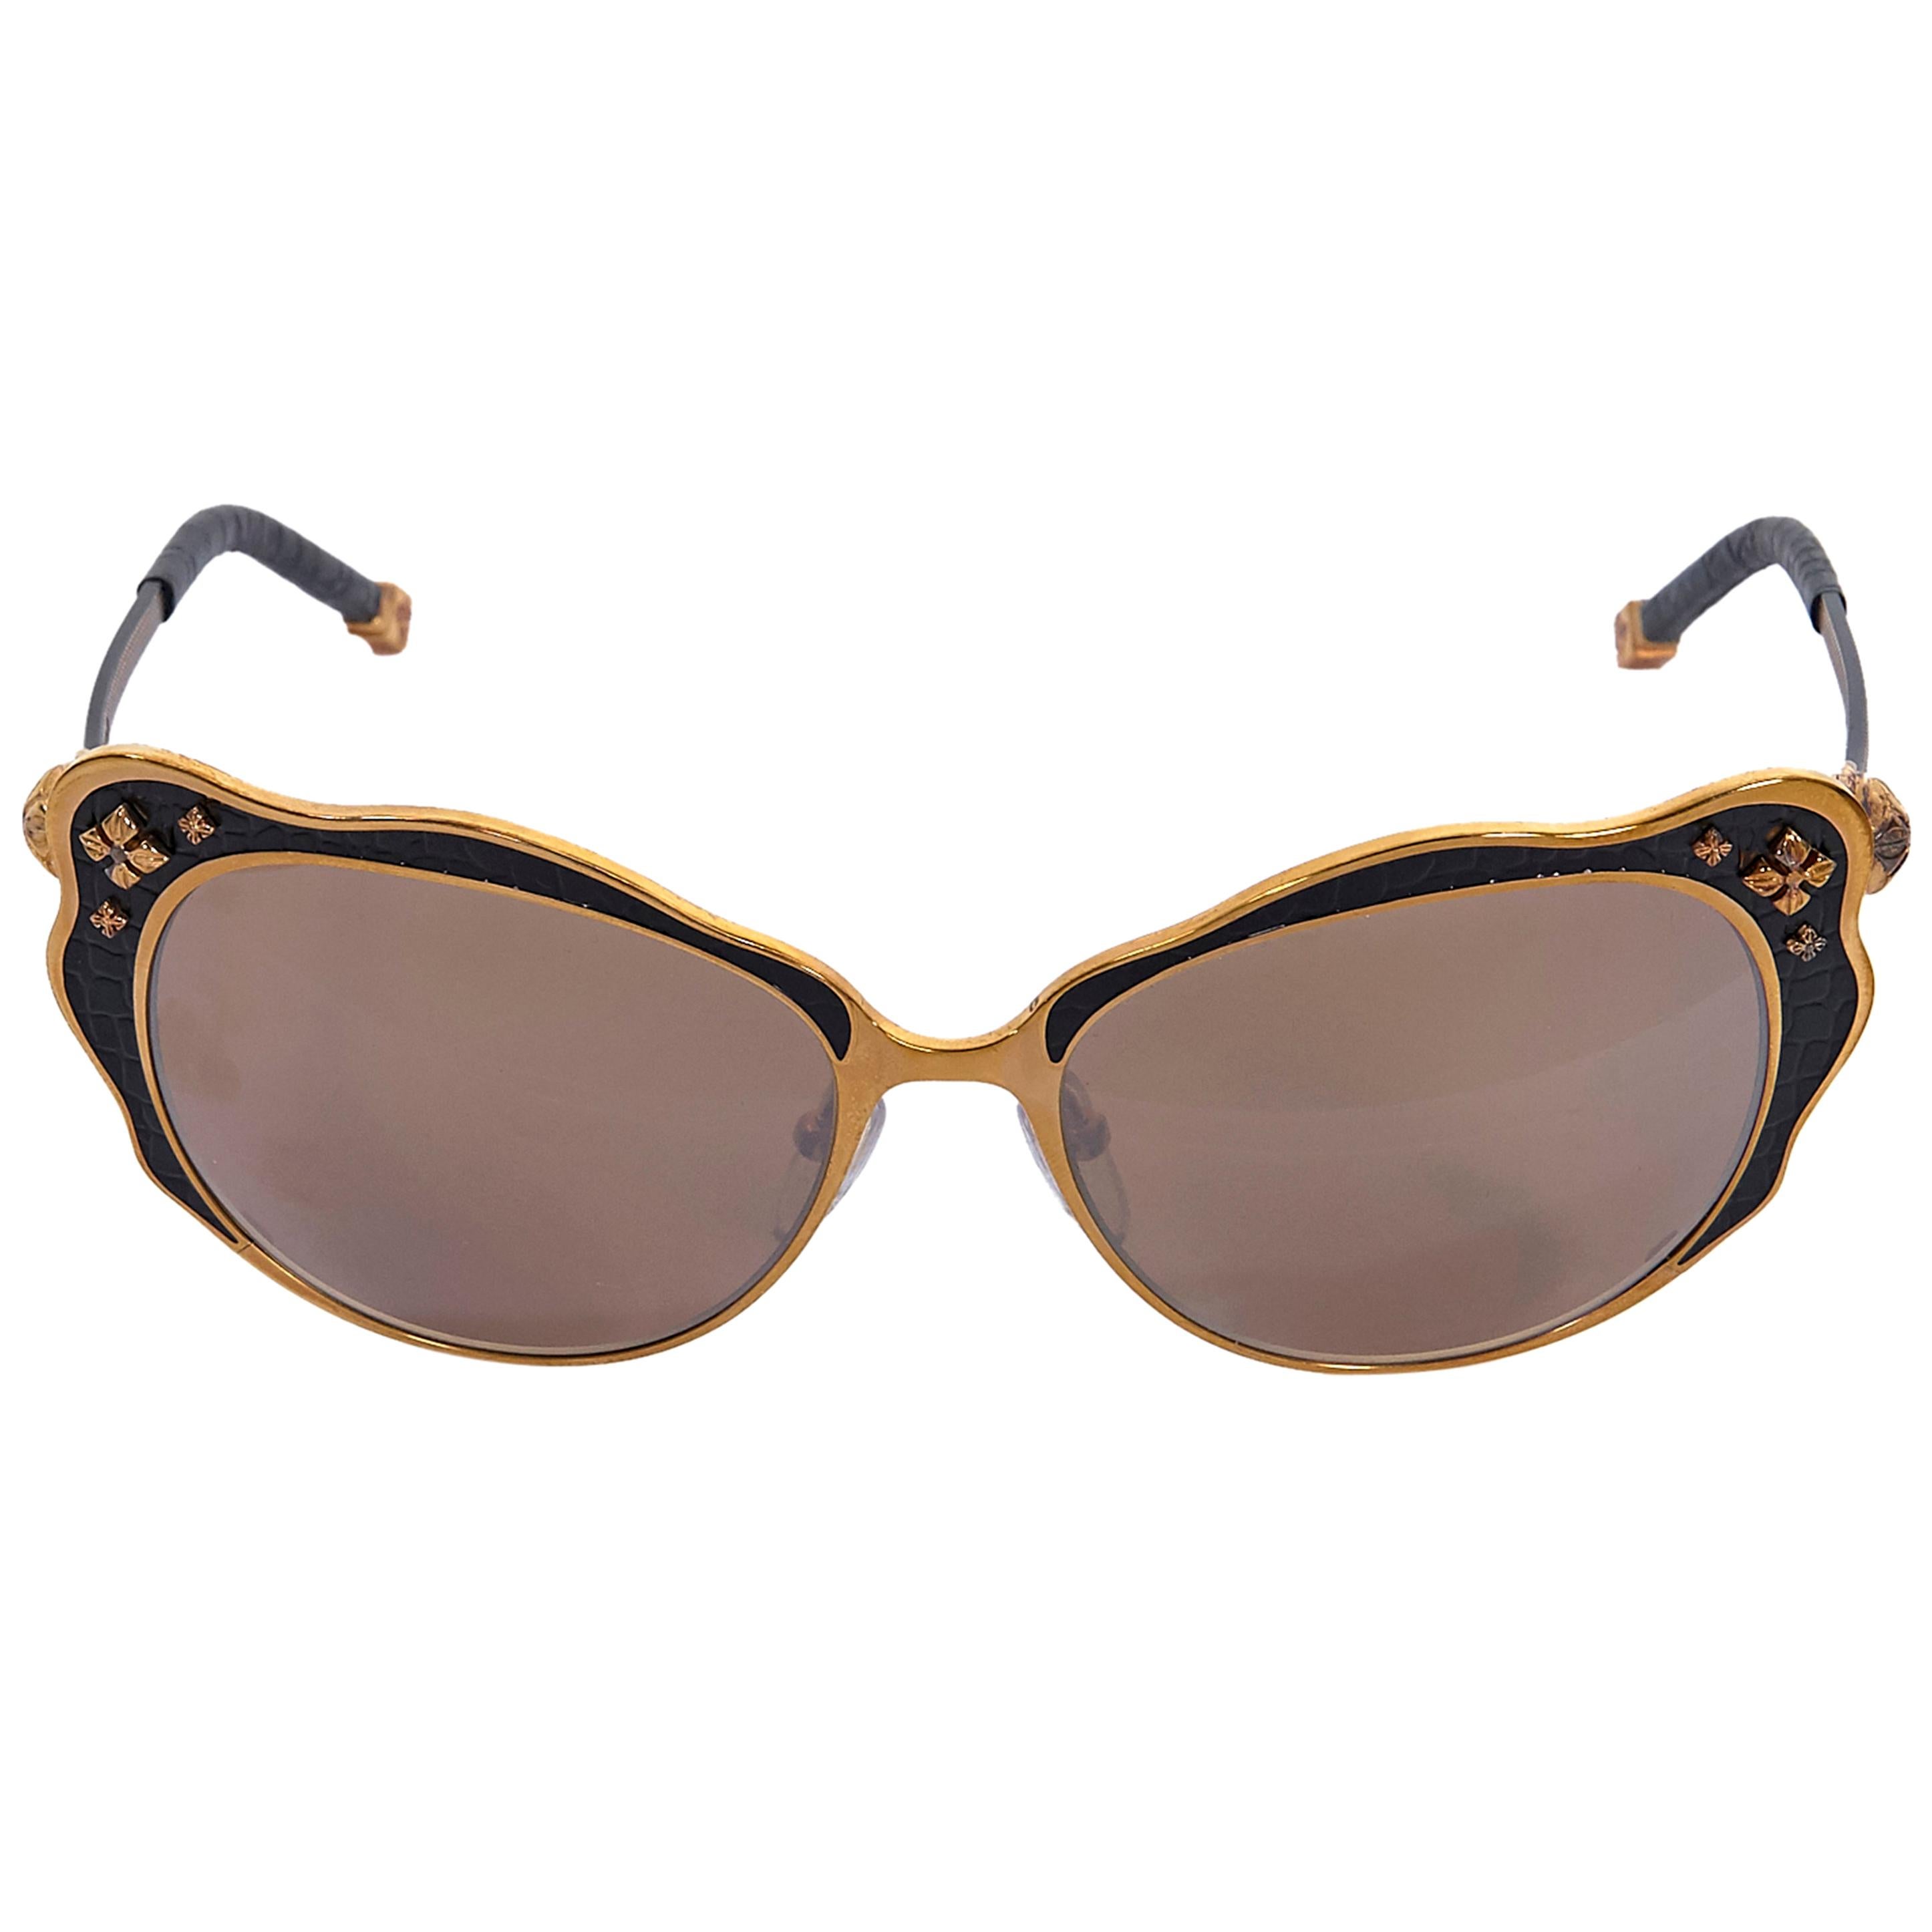 Shamballa Bronze and Black Lotus 1 Cat-Eye Sunglasses